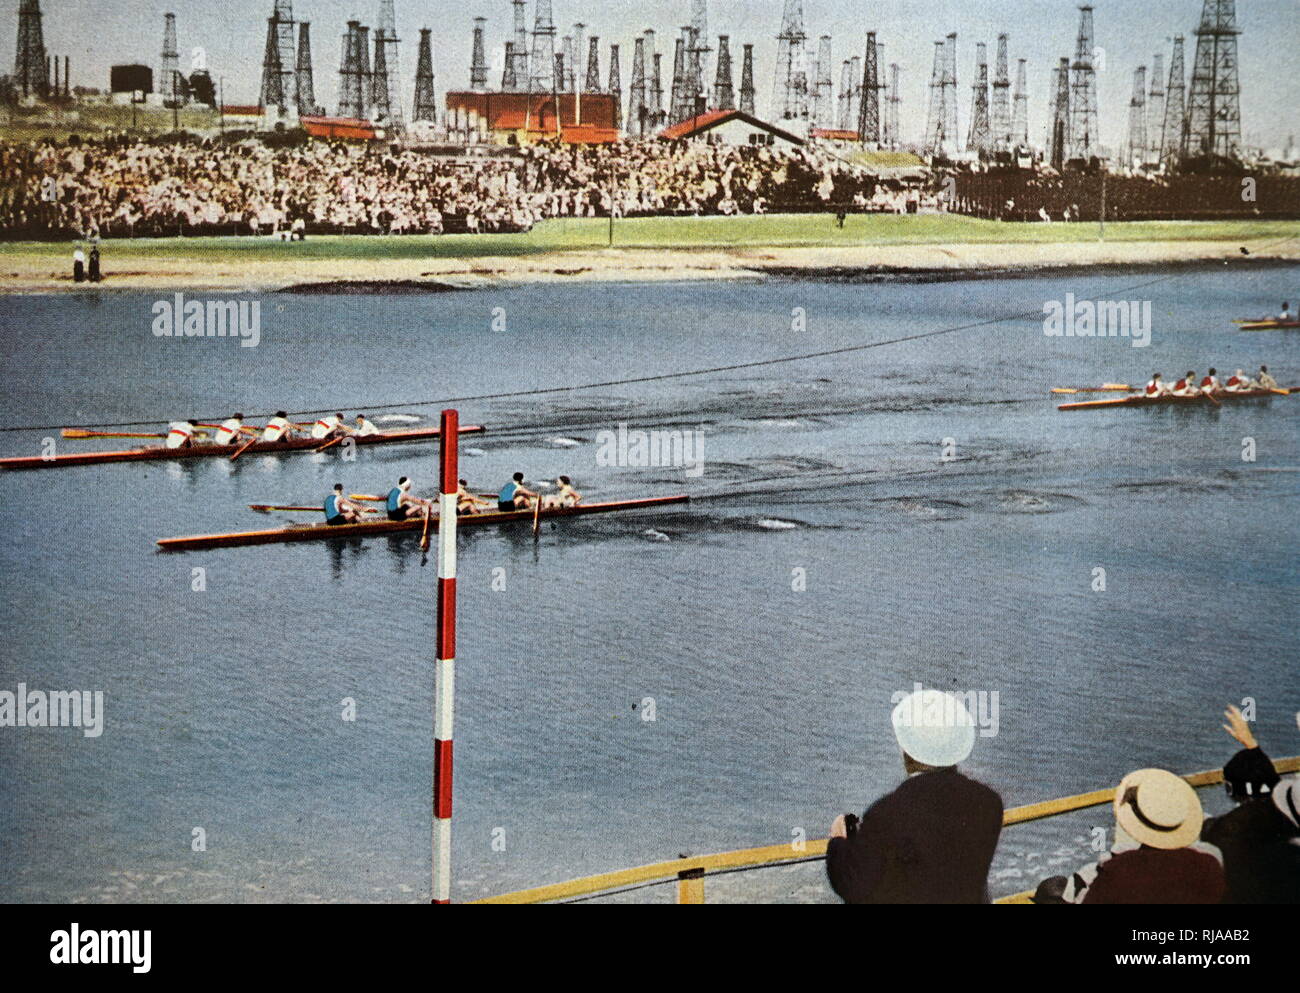 Fotografia del Coxed fours canottaggio presso il 1932 giochi olimpici. La foto mostra la vittoria della Germania di oro su Italia che ha conquistato l'argento. Foto Stock